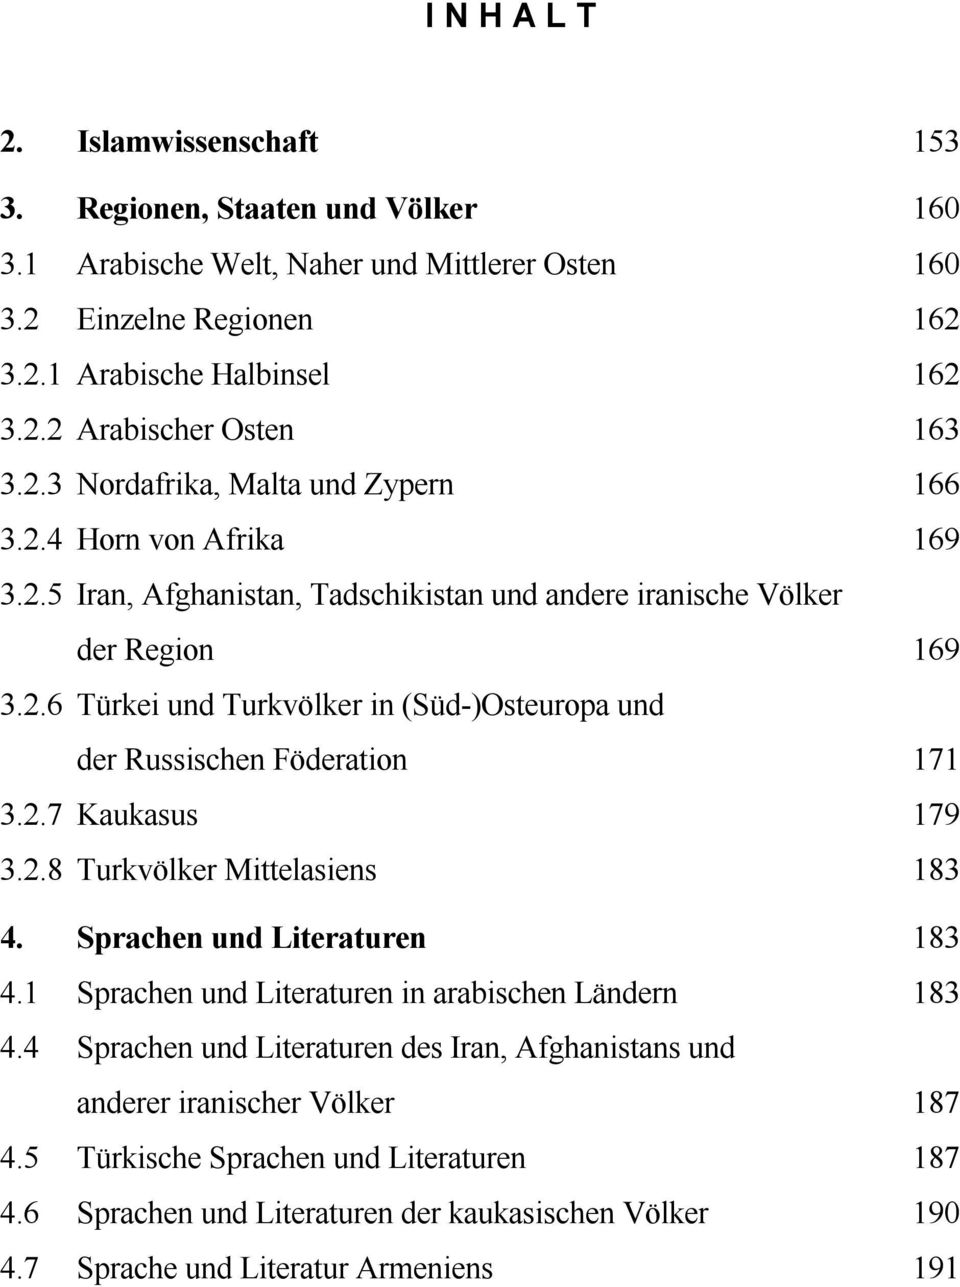 2.7 Kaukasus 179 3.2.8 Turkvölker Mittelasiens 183 4. Sprachen und Literaturen 183 4.1 Sprachen und Literaturen in arabischen Ländern 183 4.